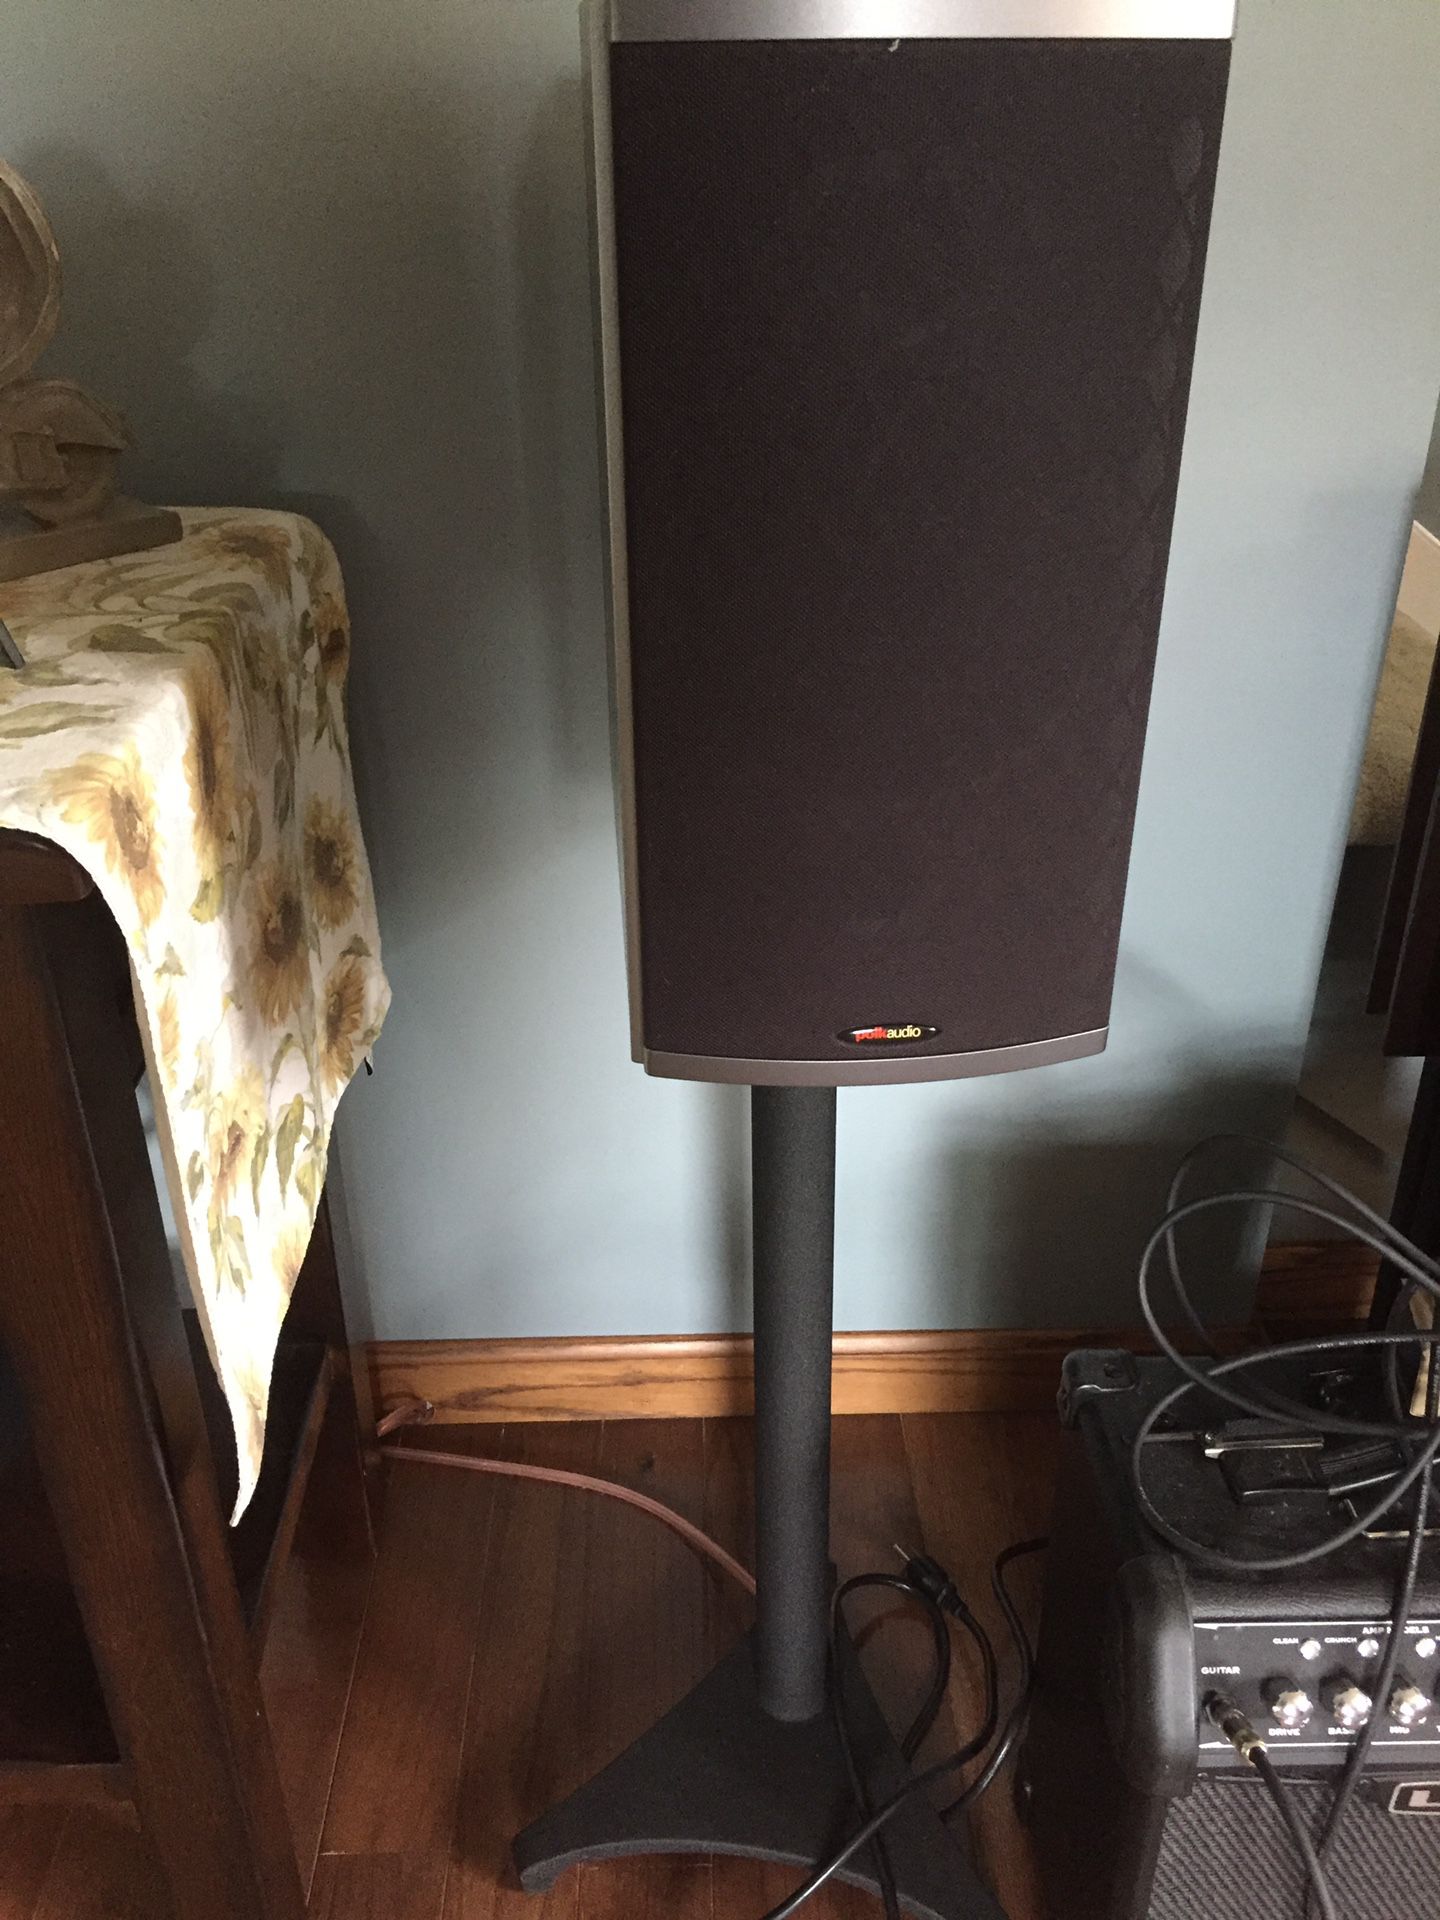 Polk Audio Surround Speakers (Wired)